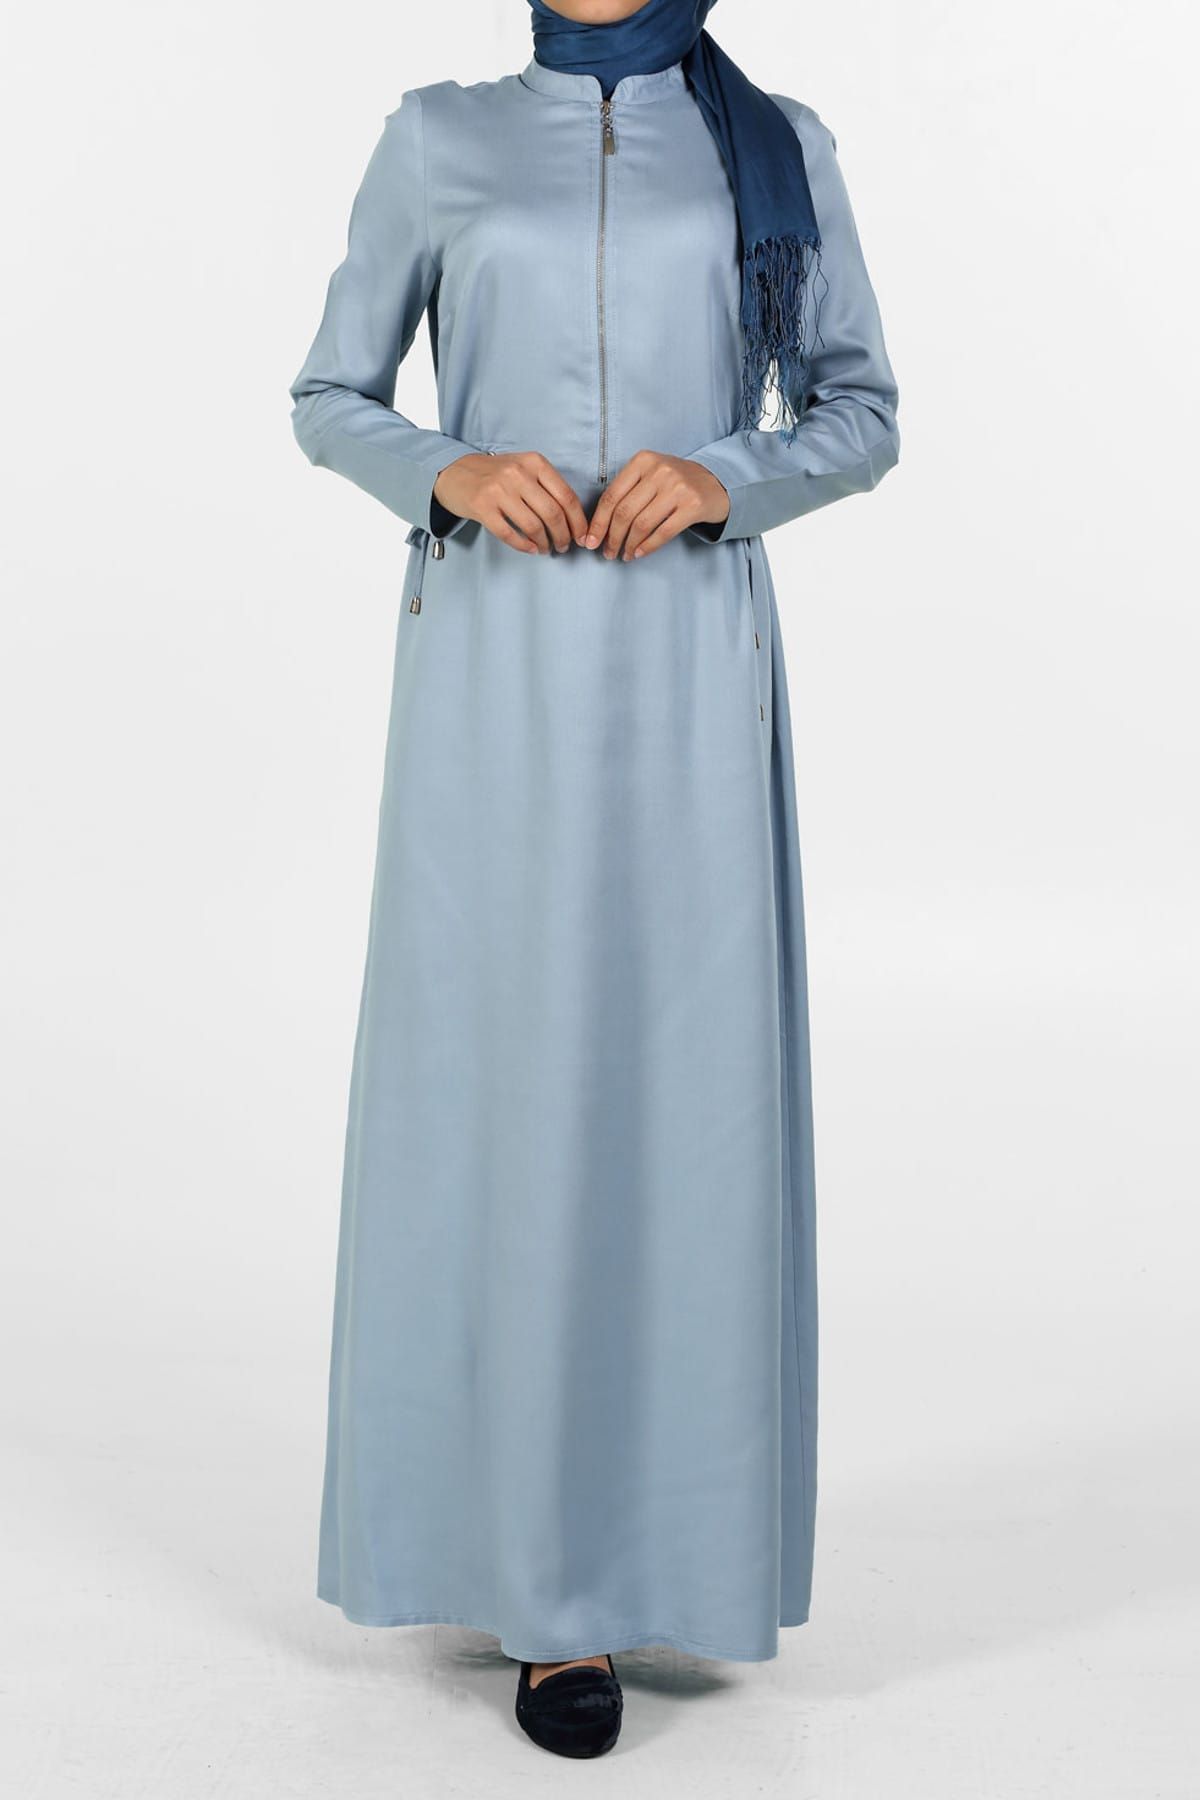 ALLDAY Çivit Mavi Bağcıklı Fermuarlı Elbise